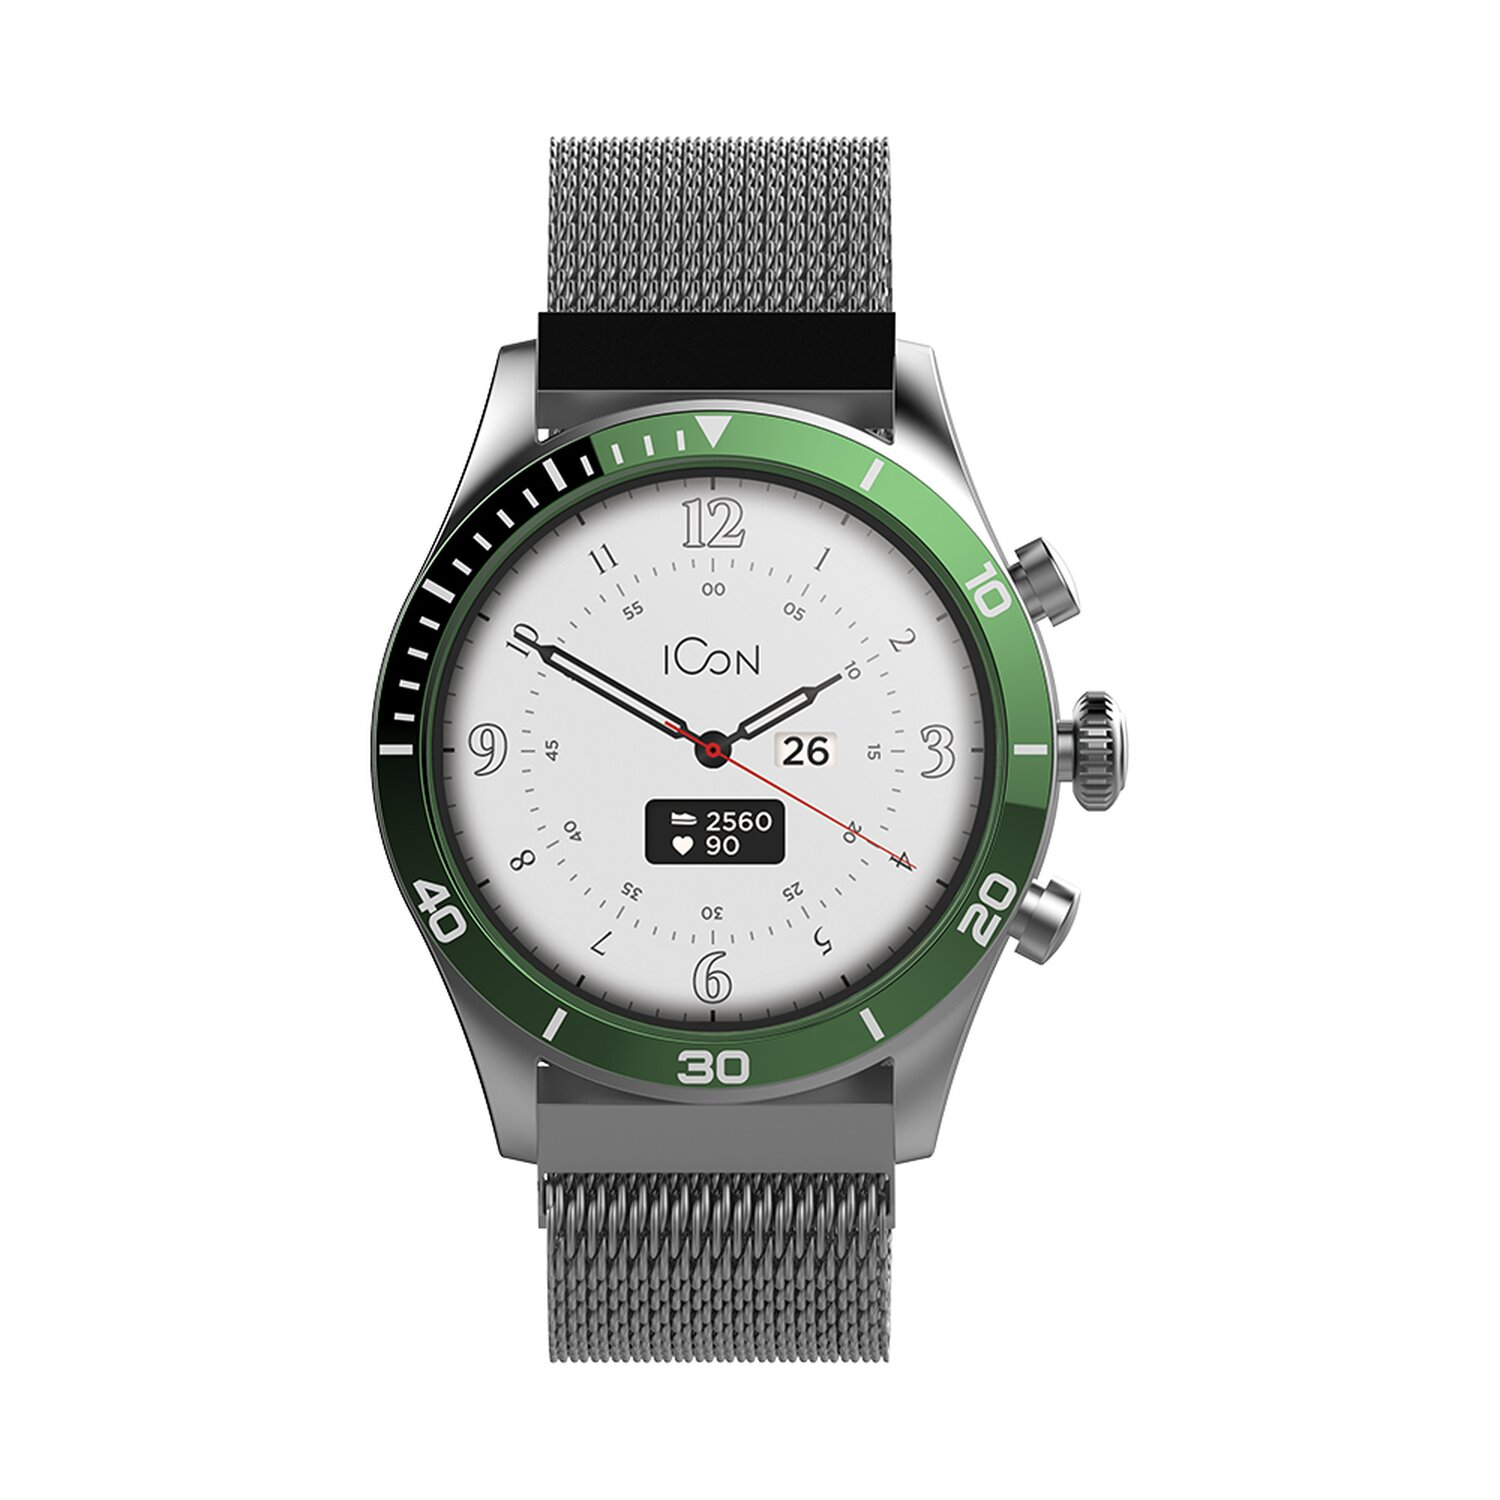 FOREVER Kunststoff, AMOLED Smartwatch Grün